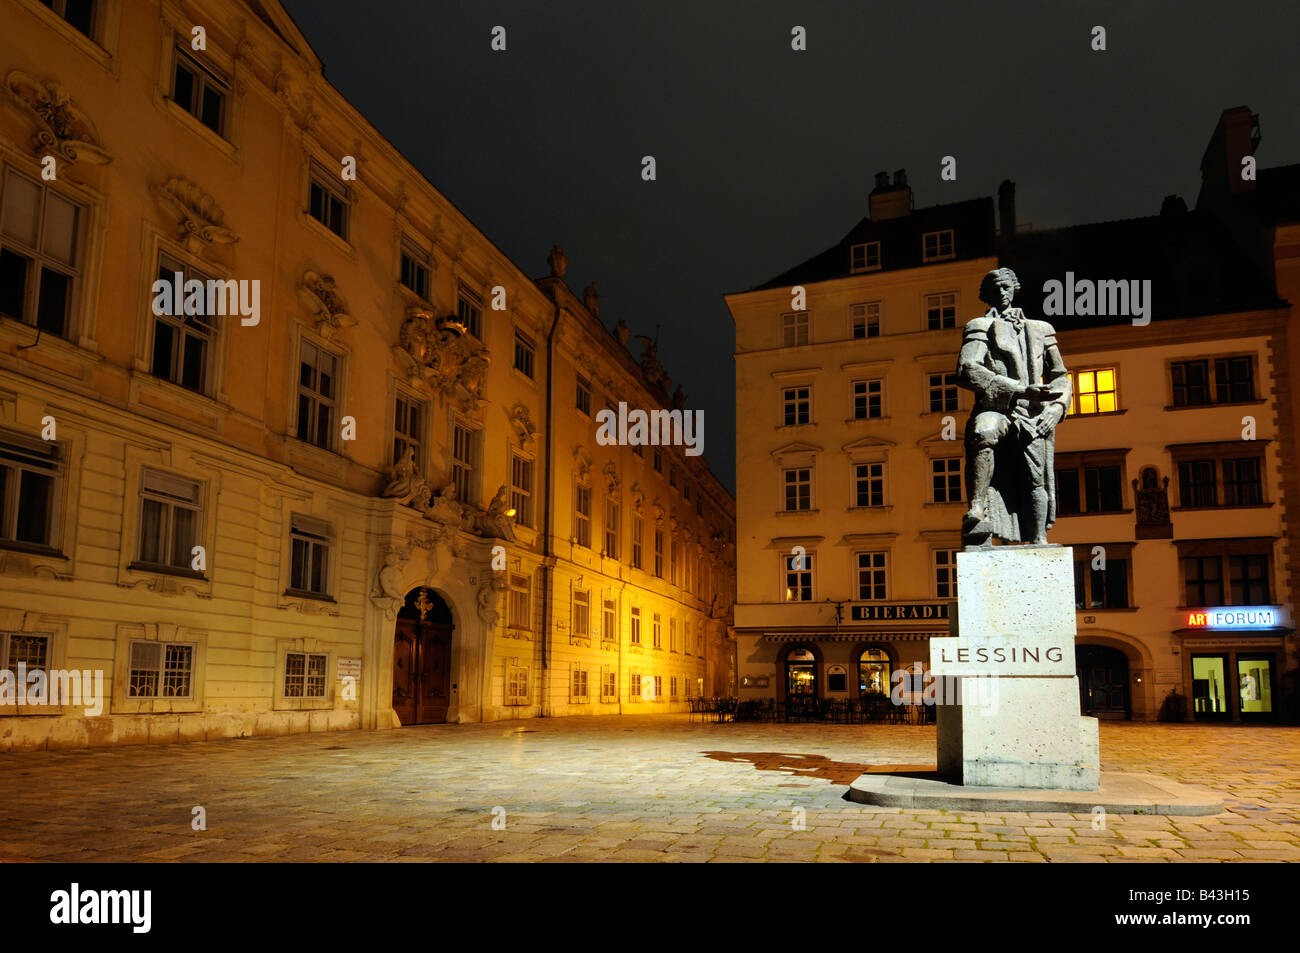 Le magnifique Judenplatz la nuit, avec la statue du célèbre écrivain allemand Lessing, à Vienne, Autriche. Banque D'Images